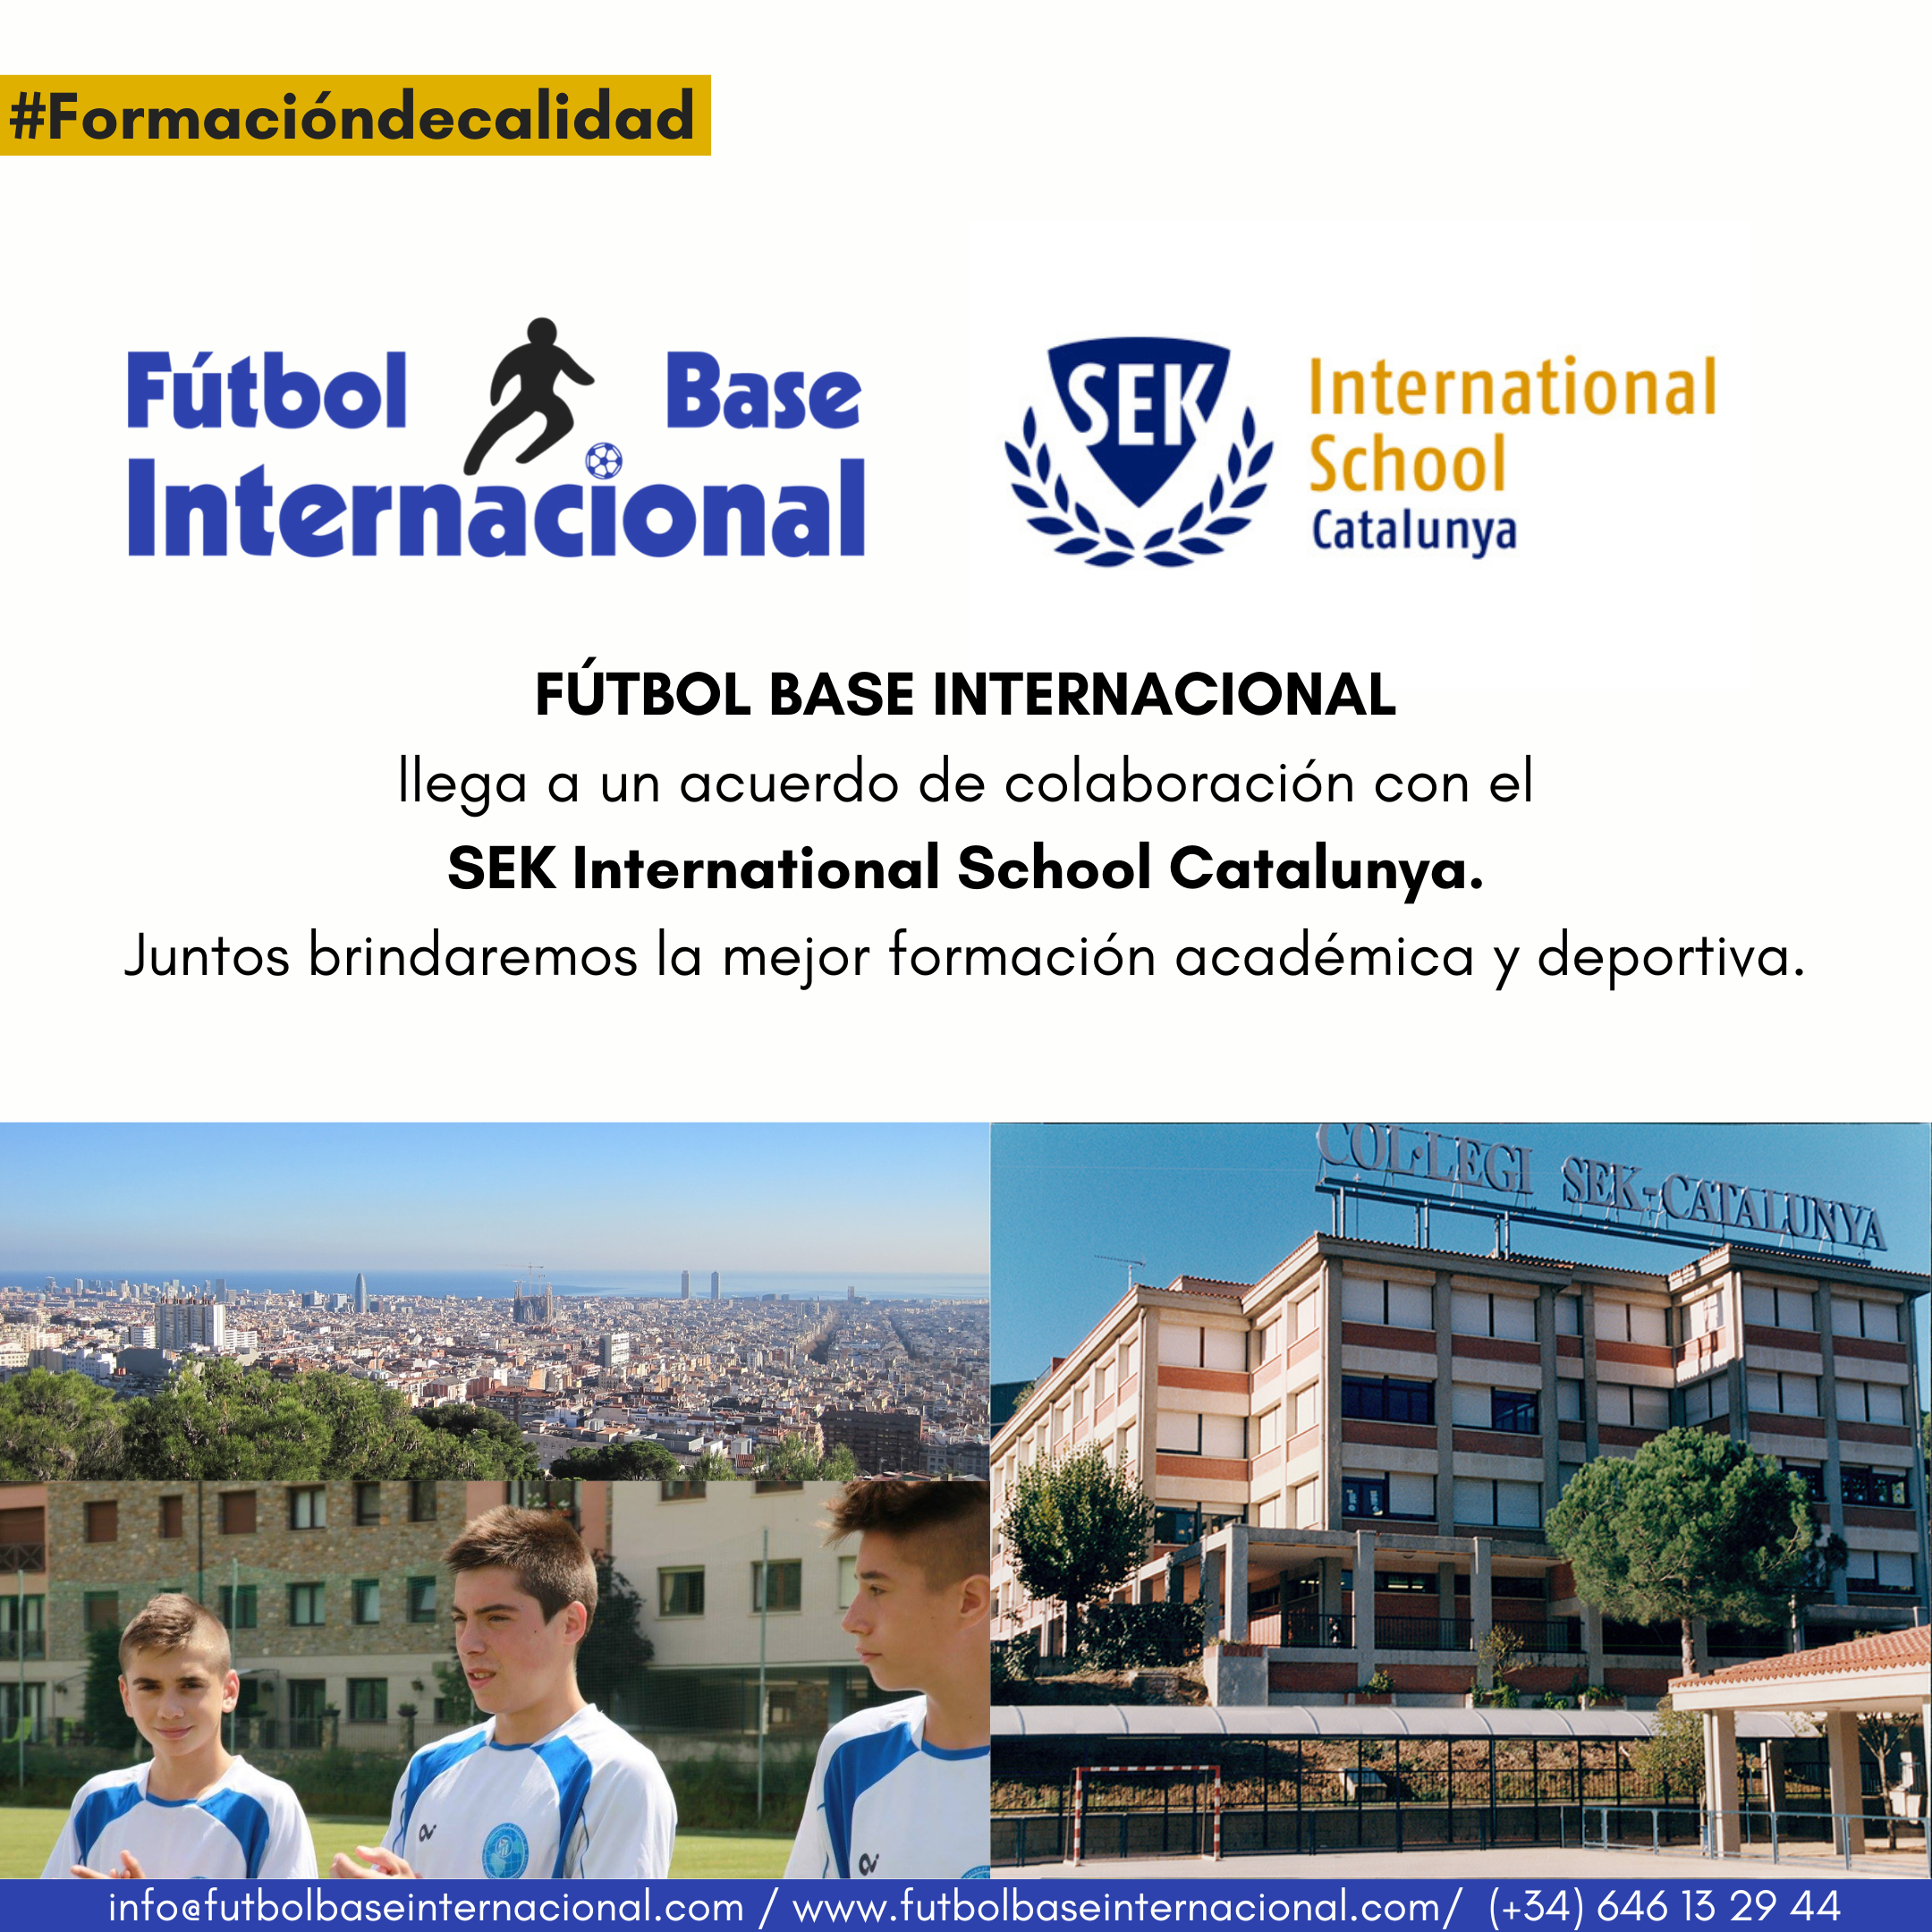 Acuerdo de colaboración con el SEK International School Catalunya